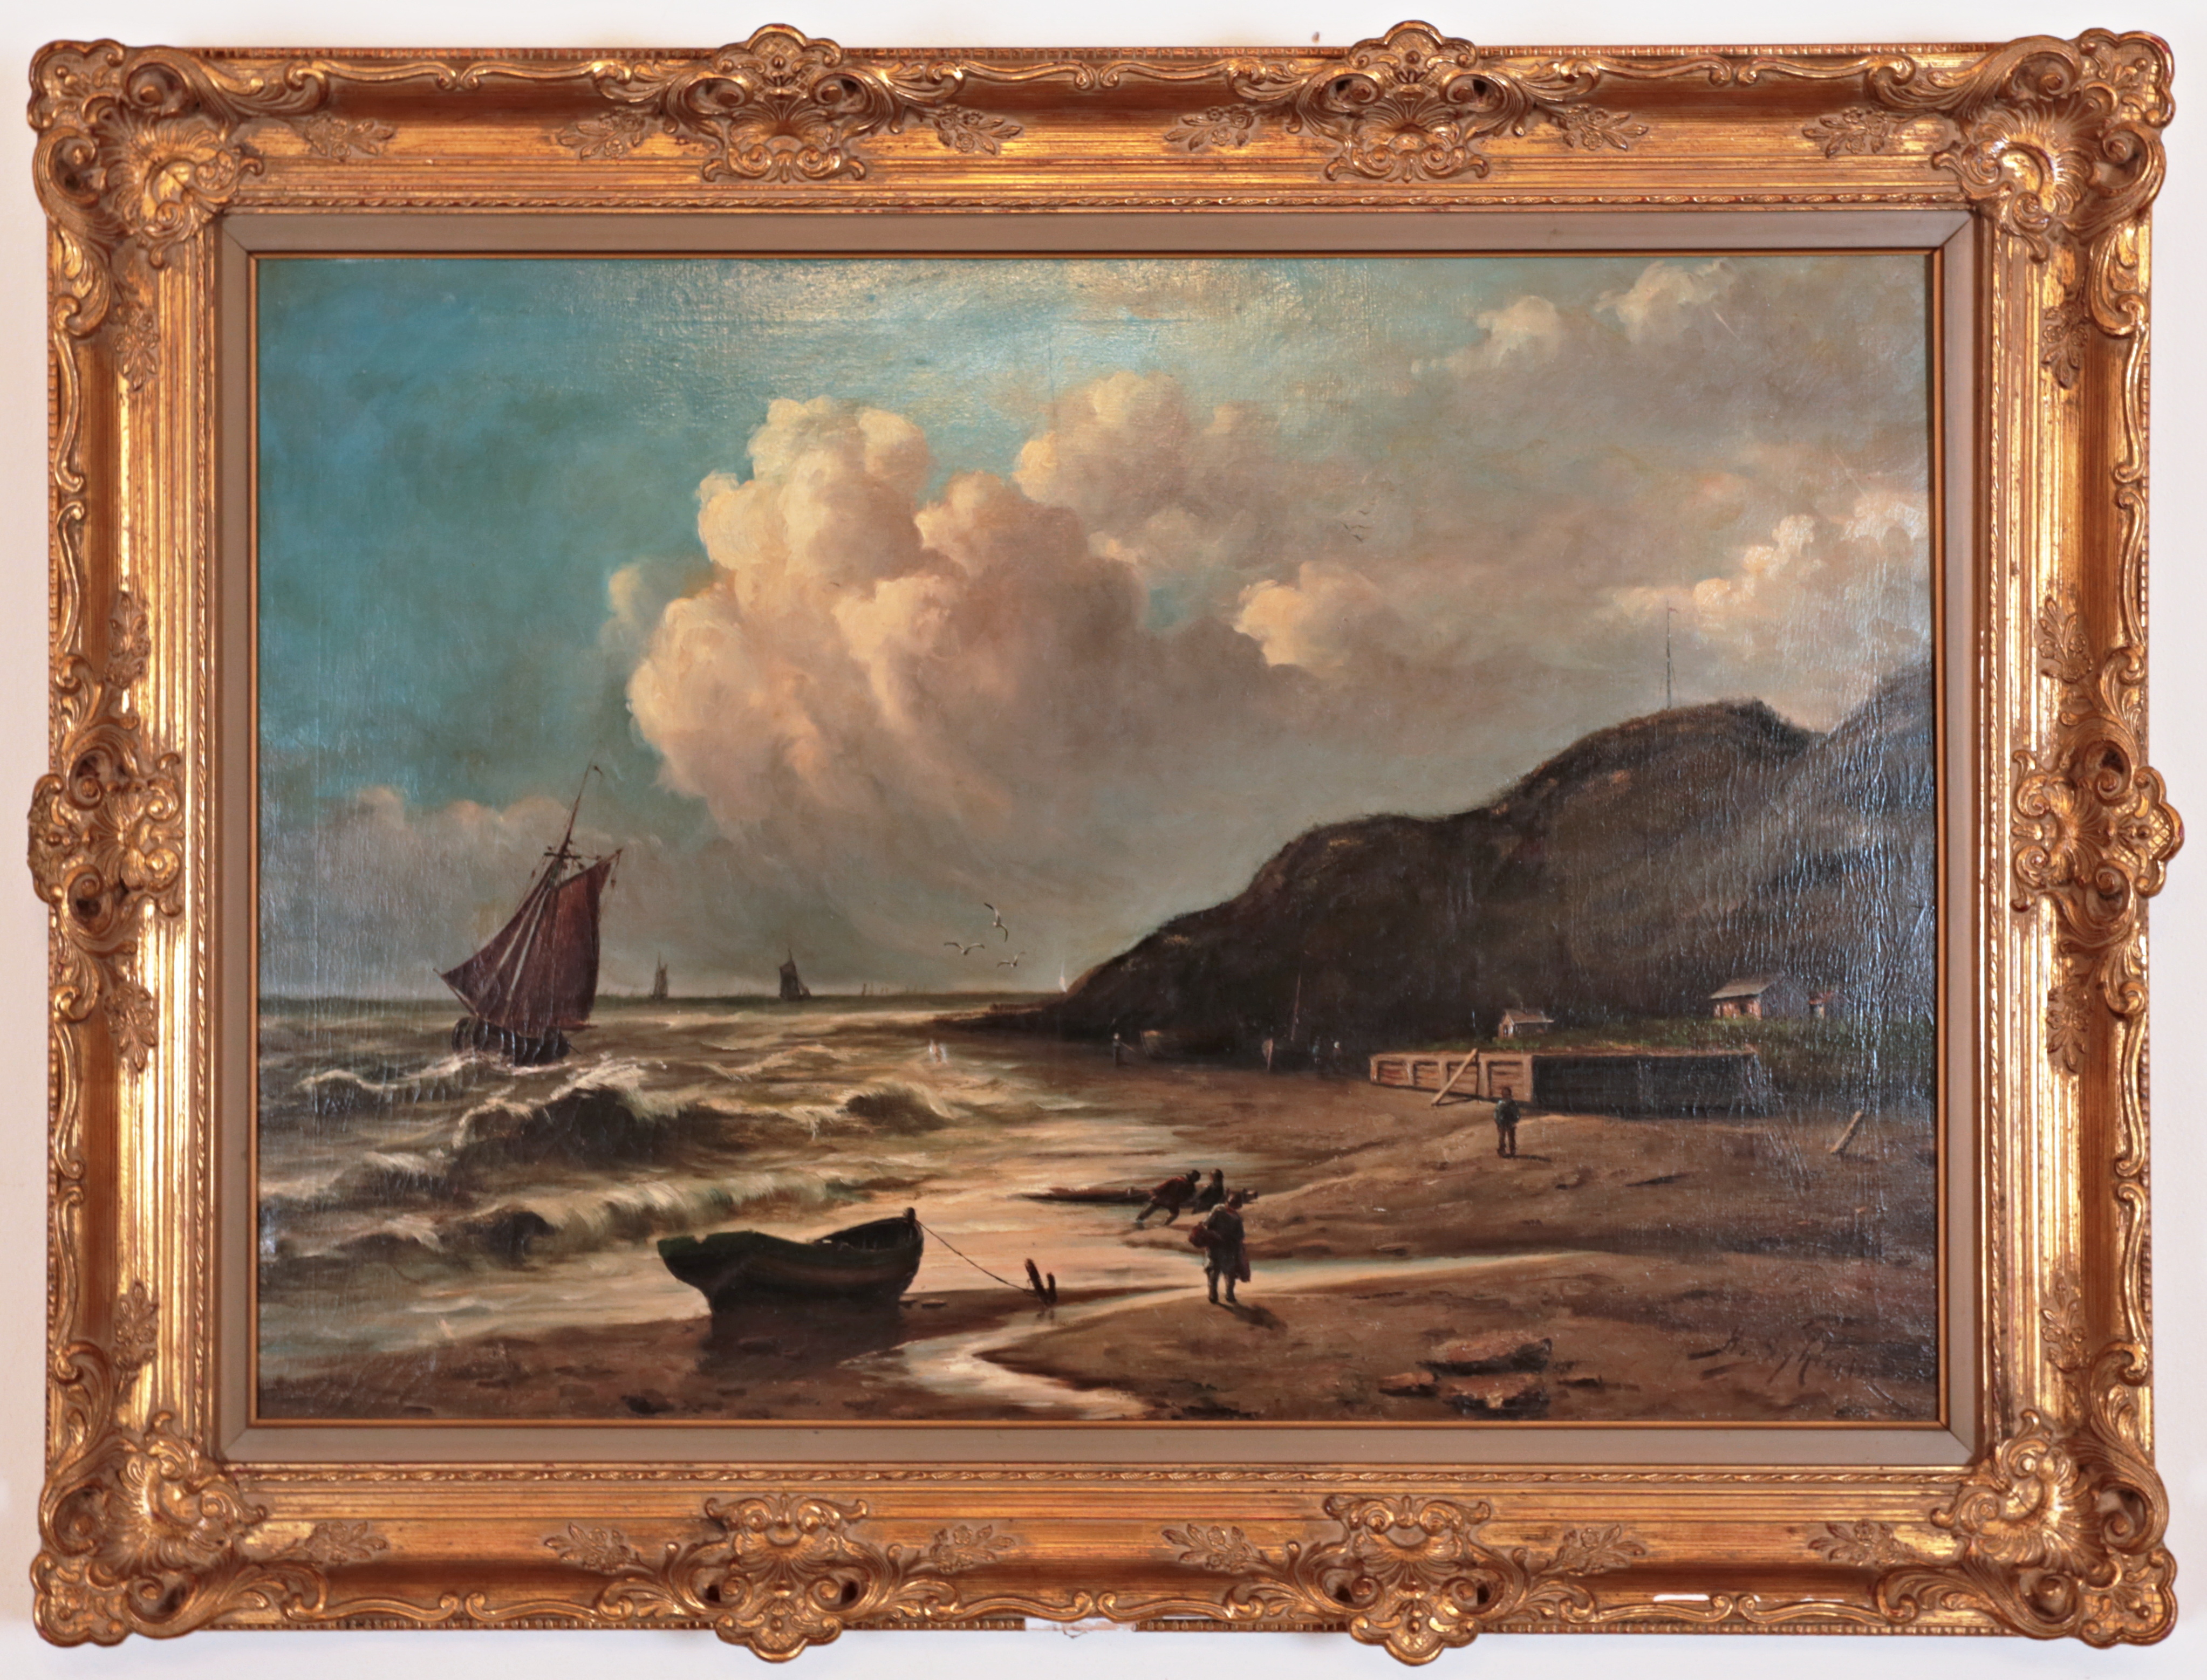 Velký obraz „Lodě u pobřeží” signovaný